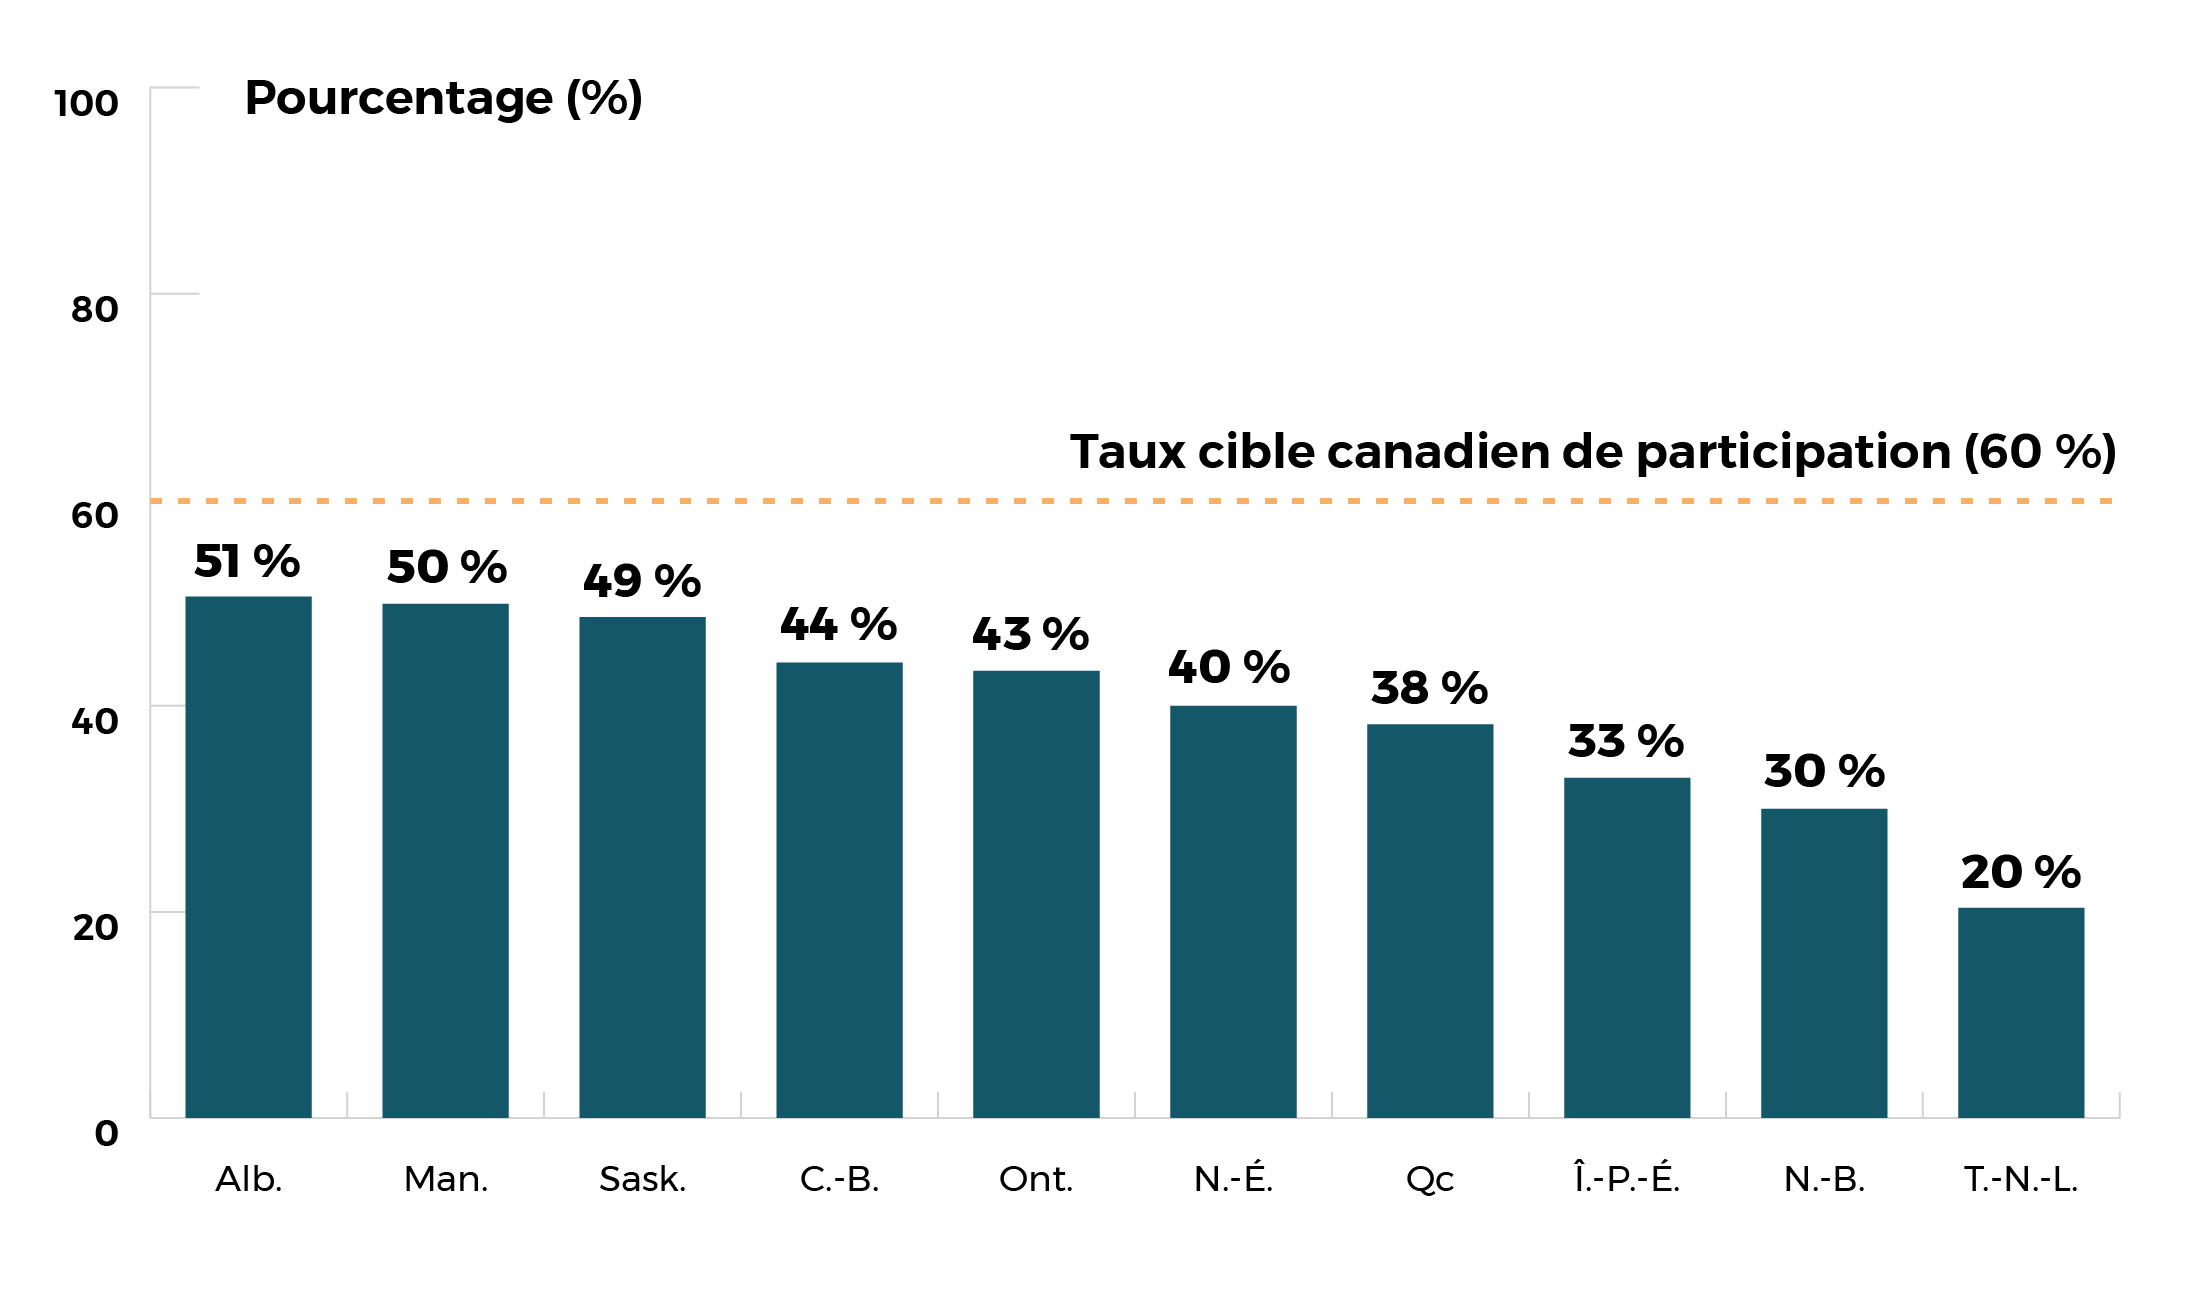 Taux de participation AB 51%, MB 50%, SK 49%, BC 44%, ON 43%, NS 40%, QC 38%, PE 33%, NB 30%, NL 20%